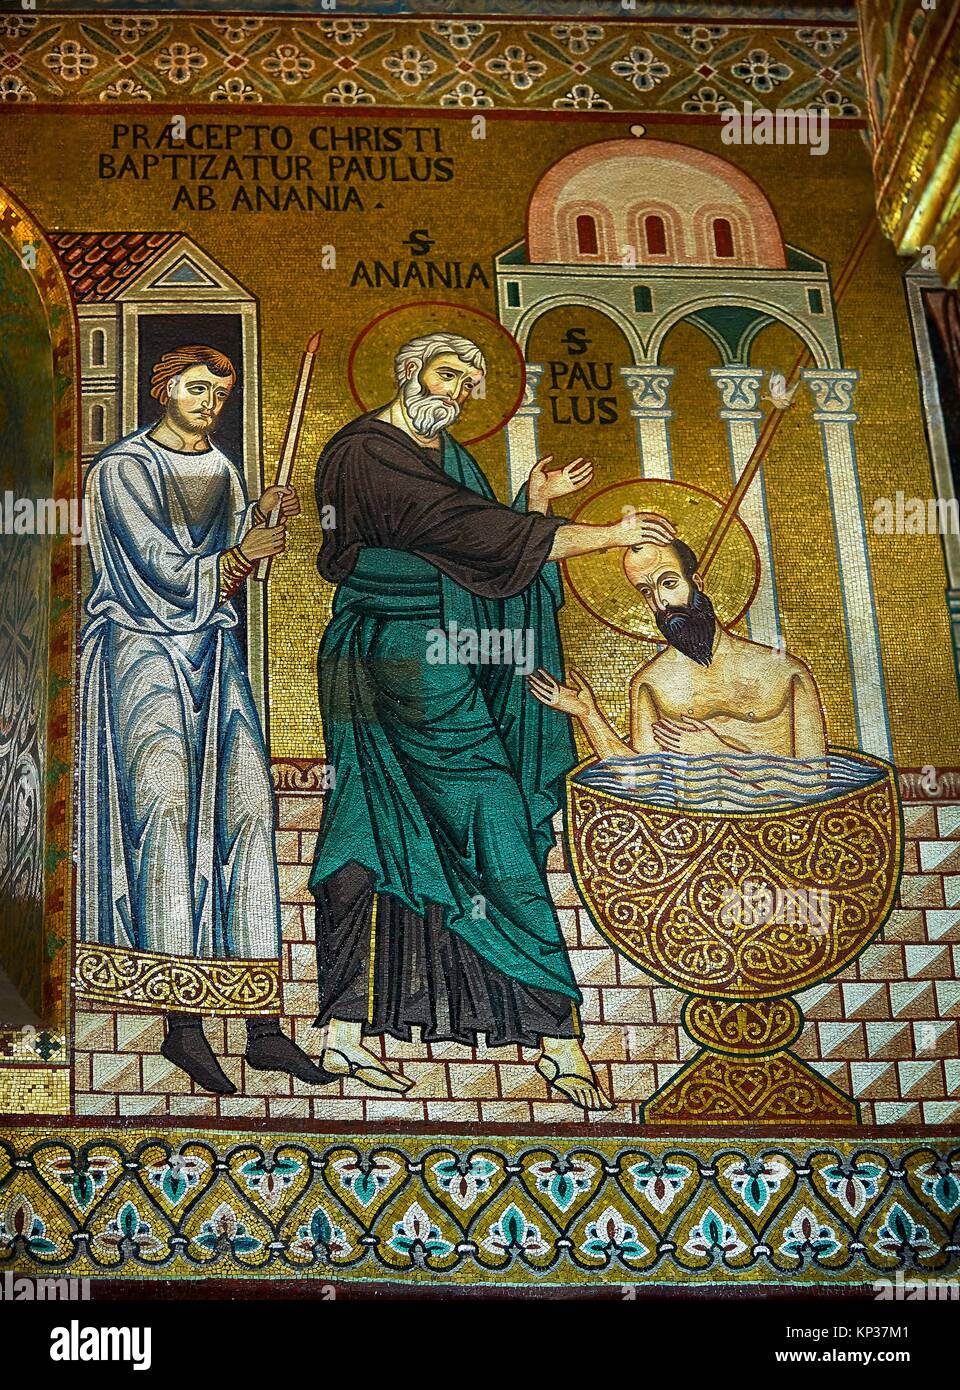 Mittelalterlichen byzantinischen Mosaiken des hl. Paulus in die pfälzische Kapelle, die Cappella Palatina, Palermo, Italien bapitised. Stockfoto